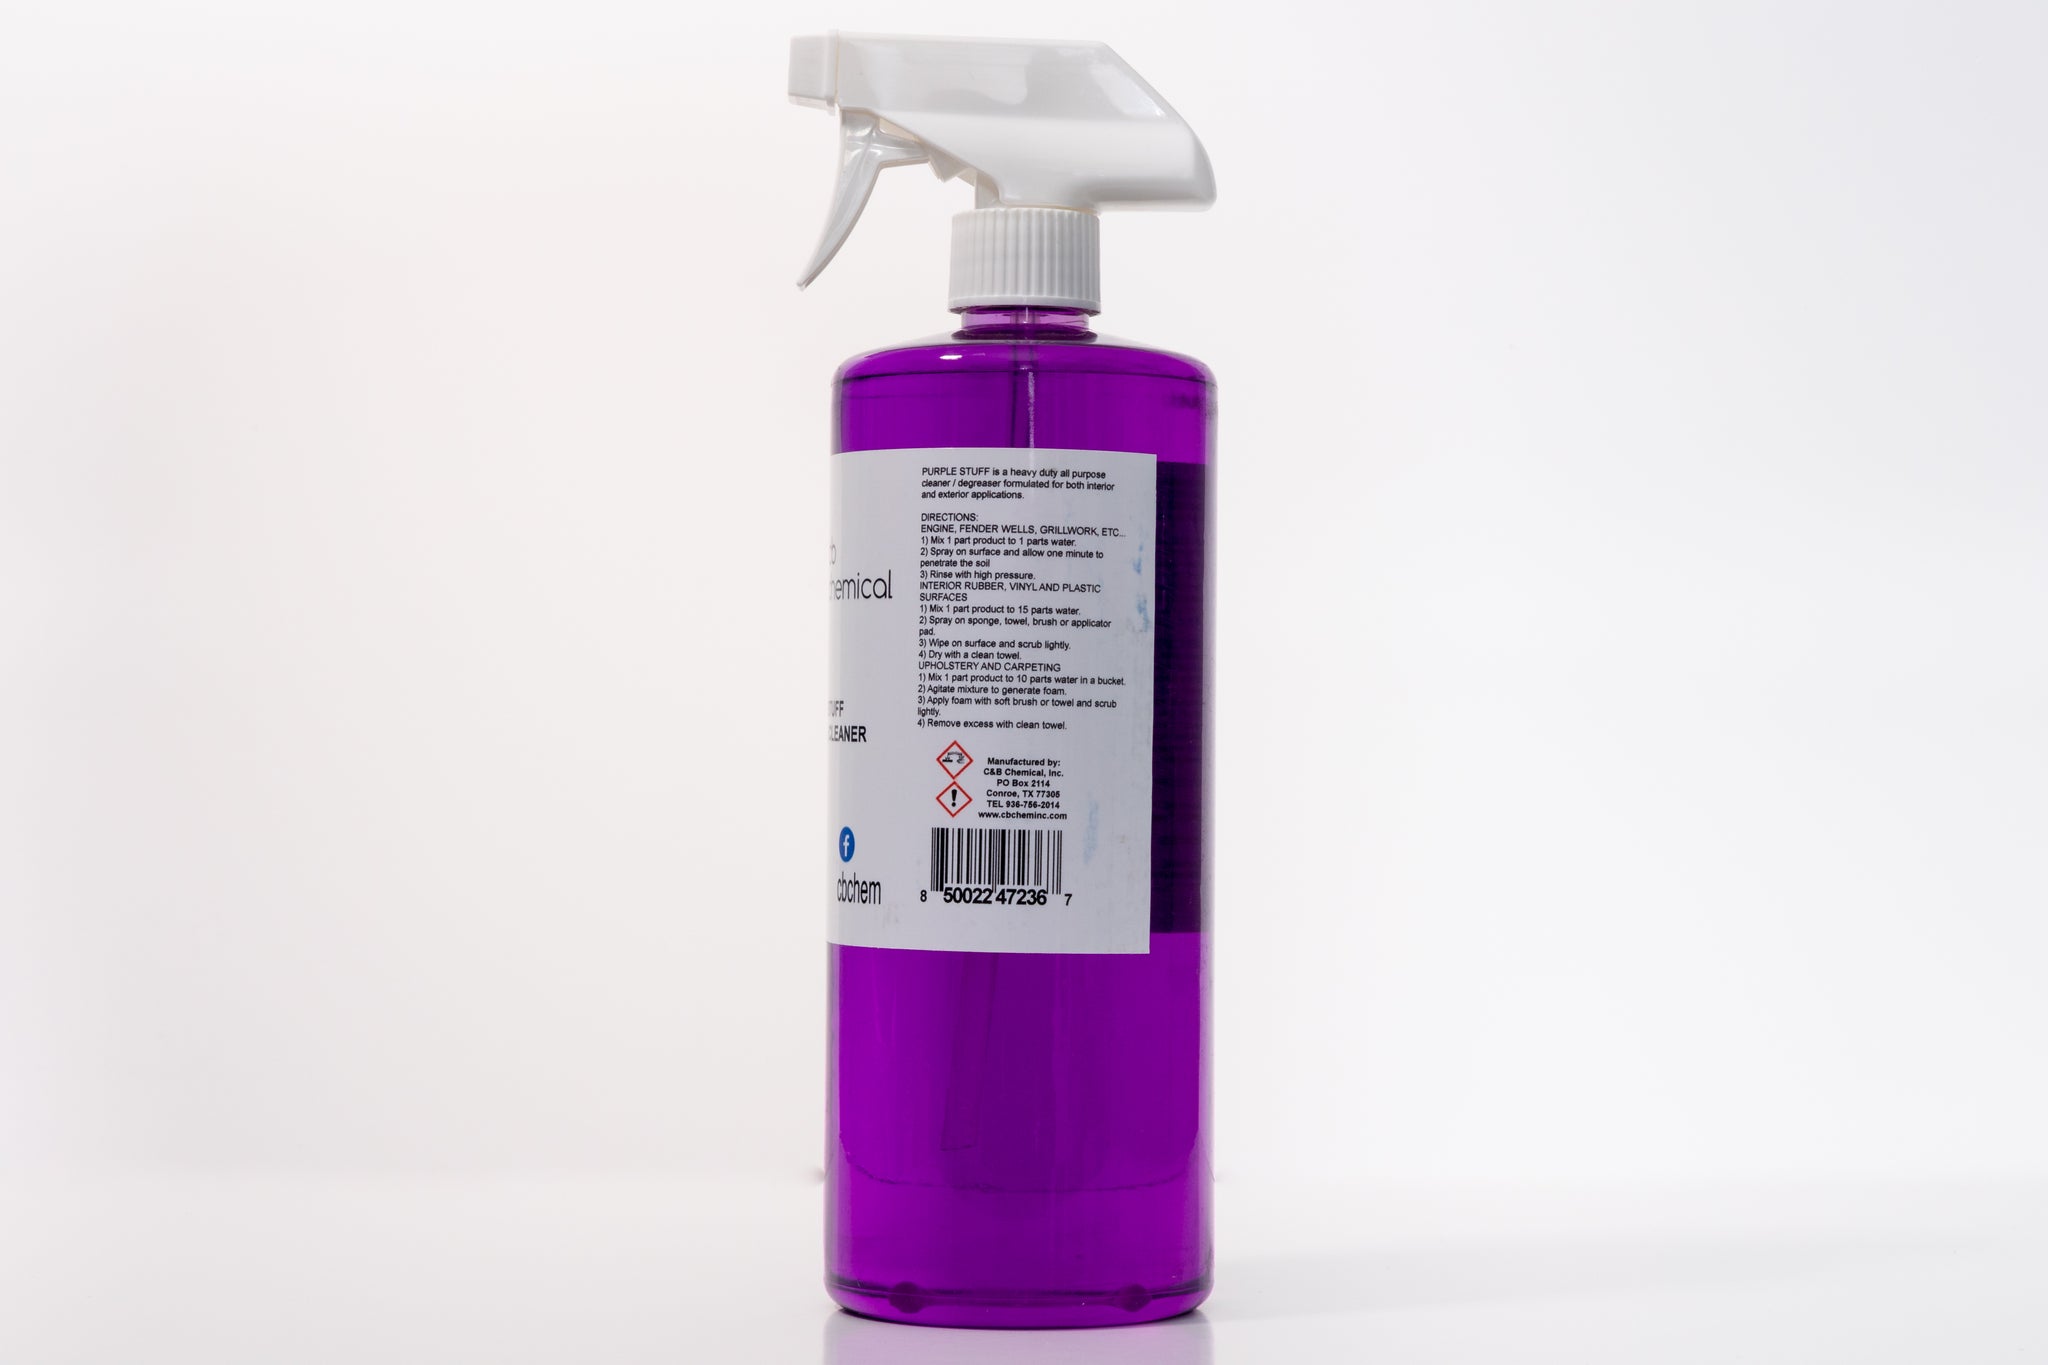 Purple Stuff - C & B Chemical, Inc